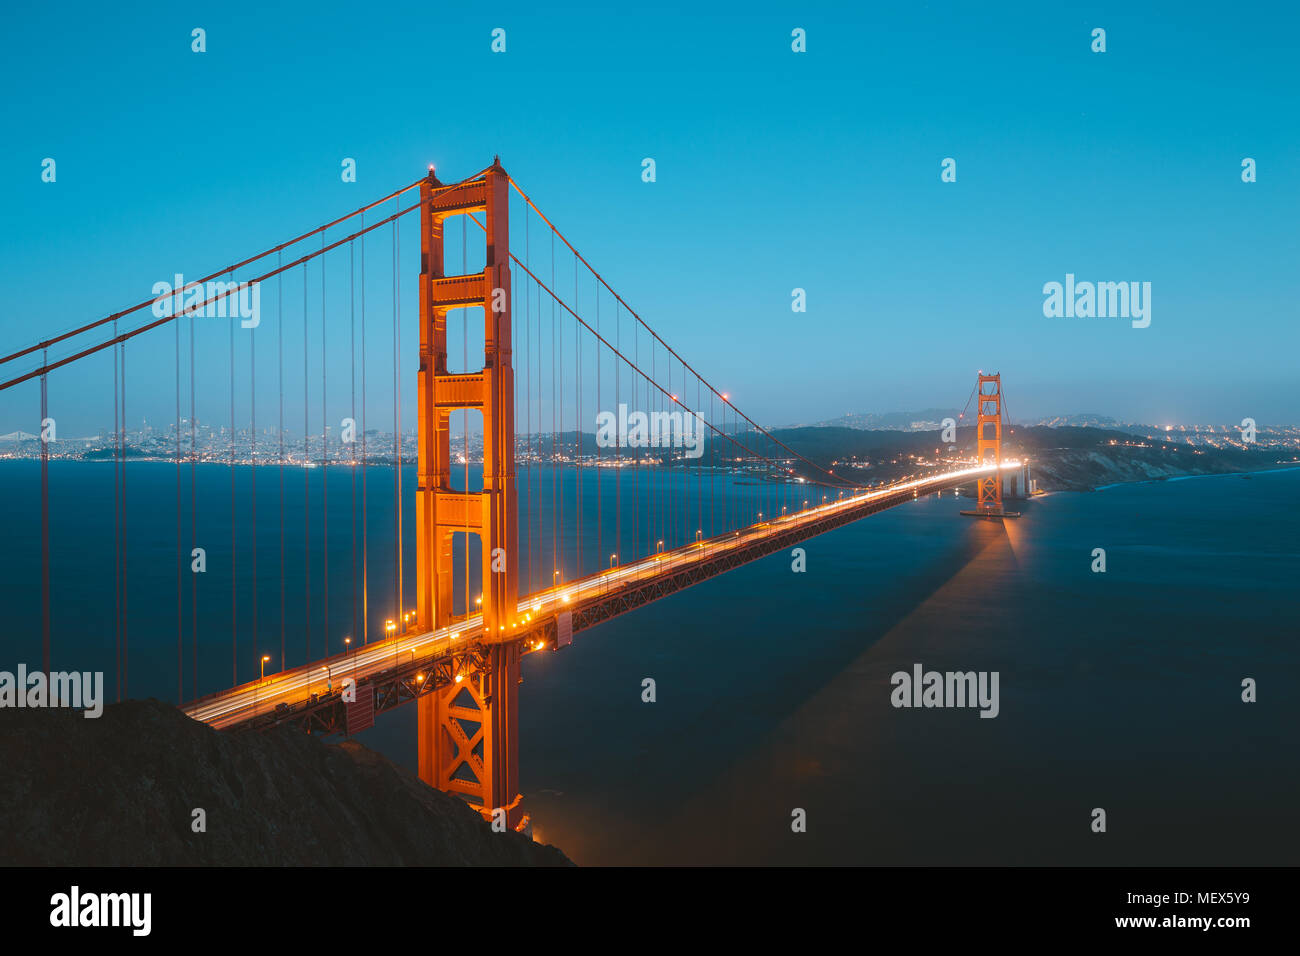 Klassische Panorama der berühmten Golden Gate Bridge gesehen aus Sicht der Batterie Spencer in schönen Beitrag Sonnenuntergang Dämmerung während der blauen Stunde in der Dämmerung in Stockfoto